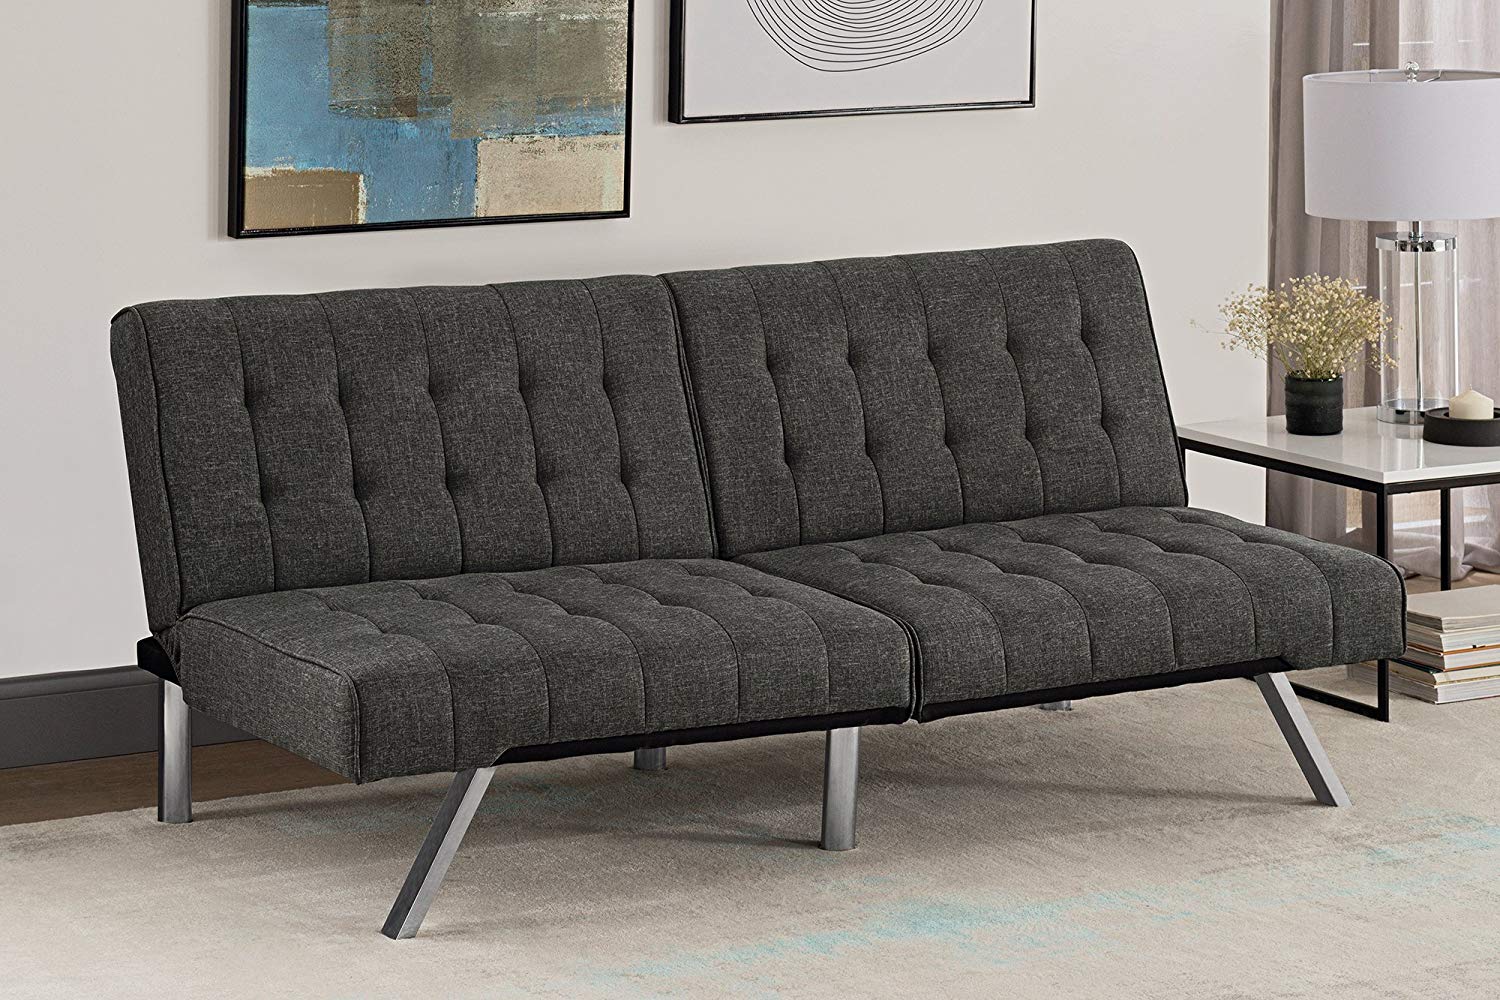 quality futon sofa beds